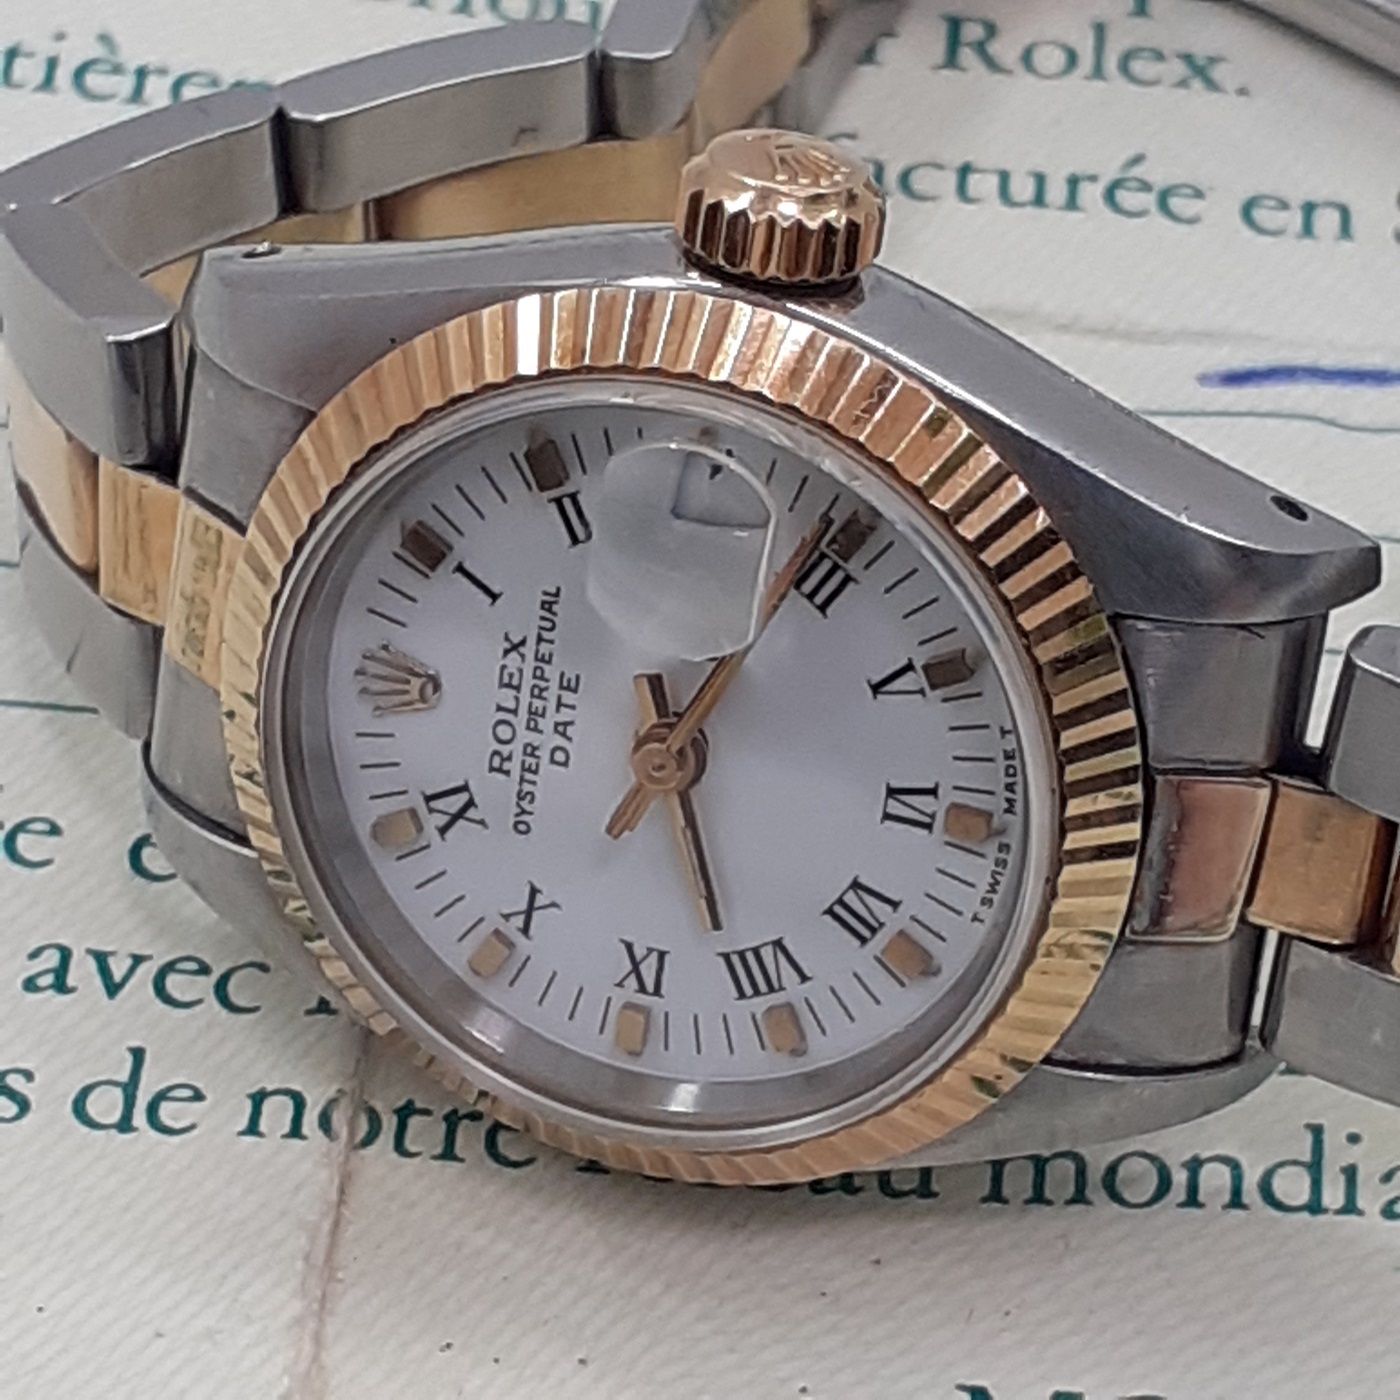 Rolex 69160